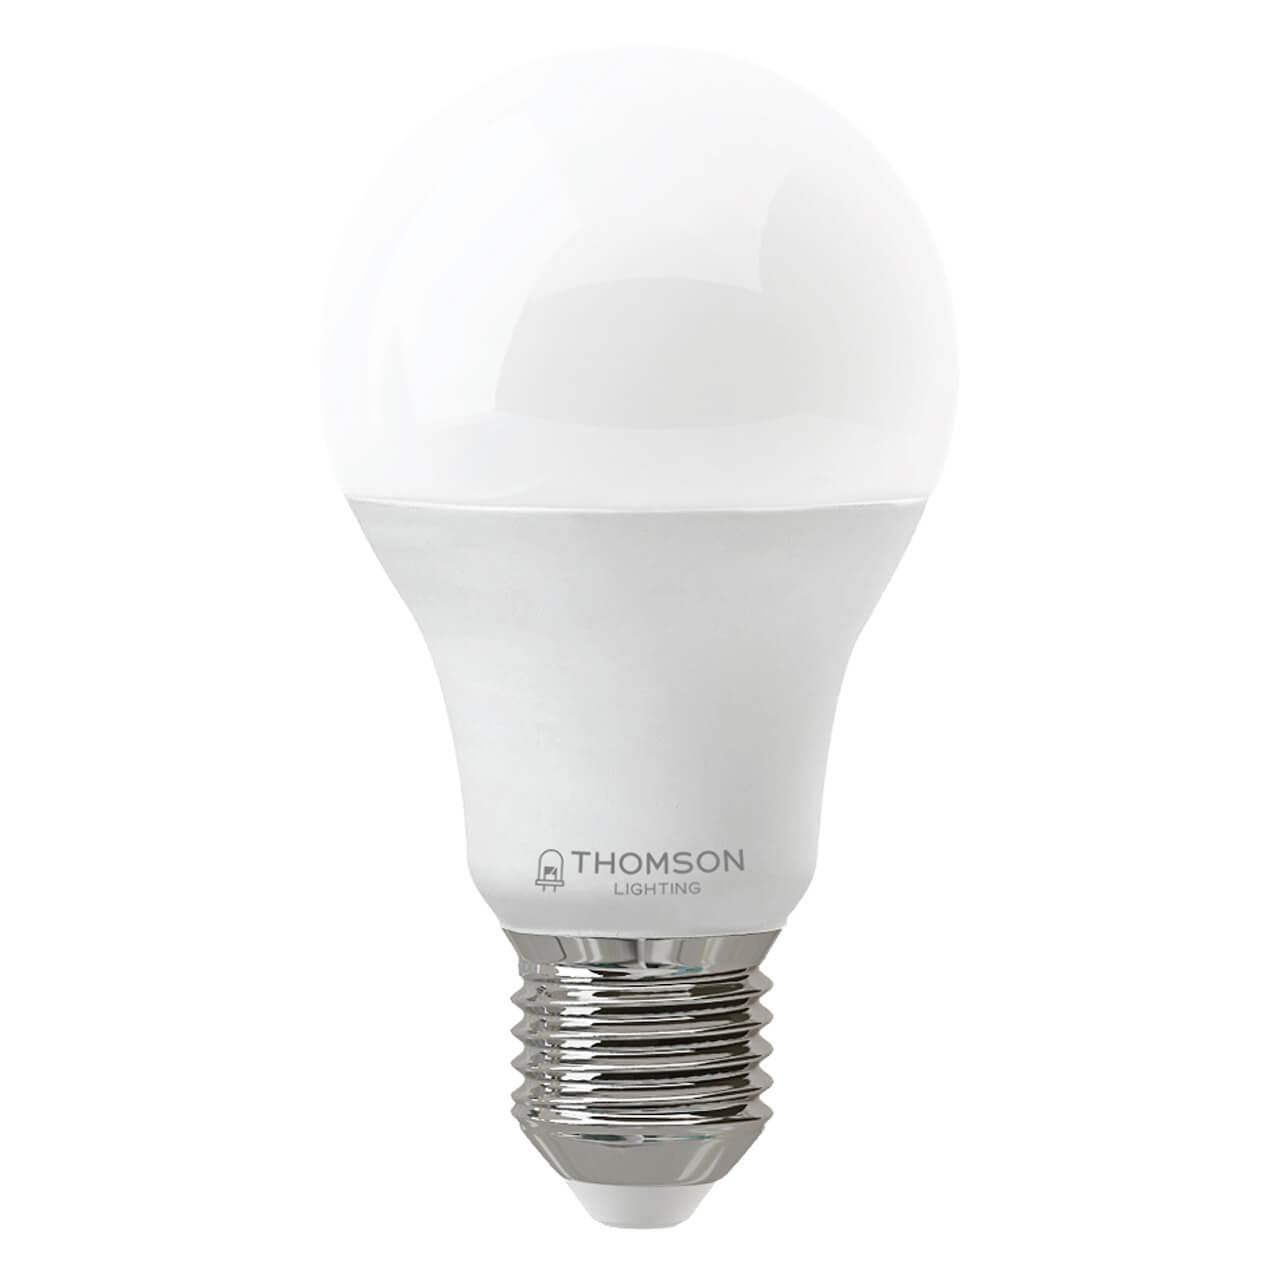 TH-B2347 Лампа светодиодная E27 19W 3000K груша матовая Thomson